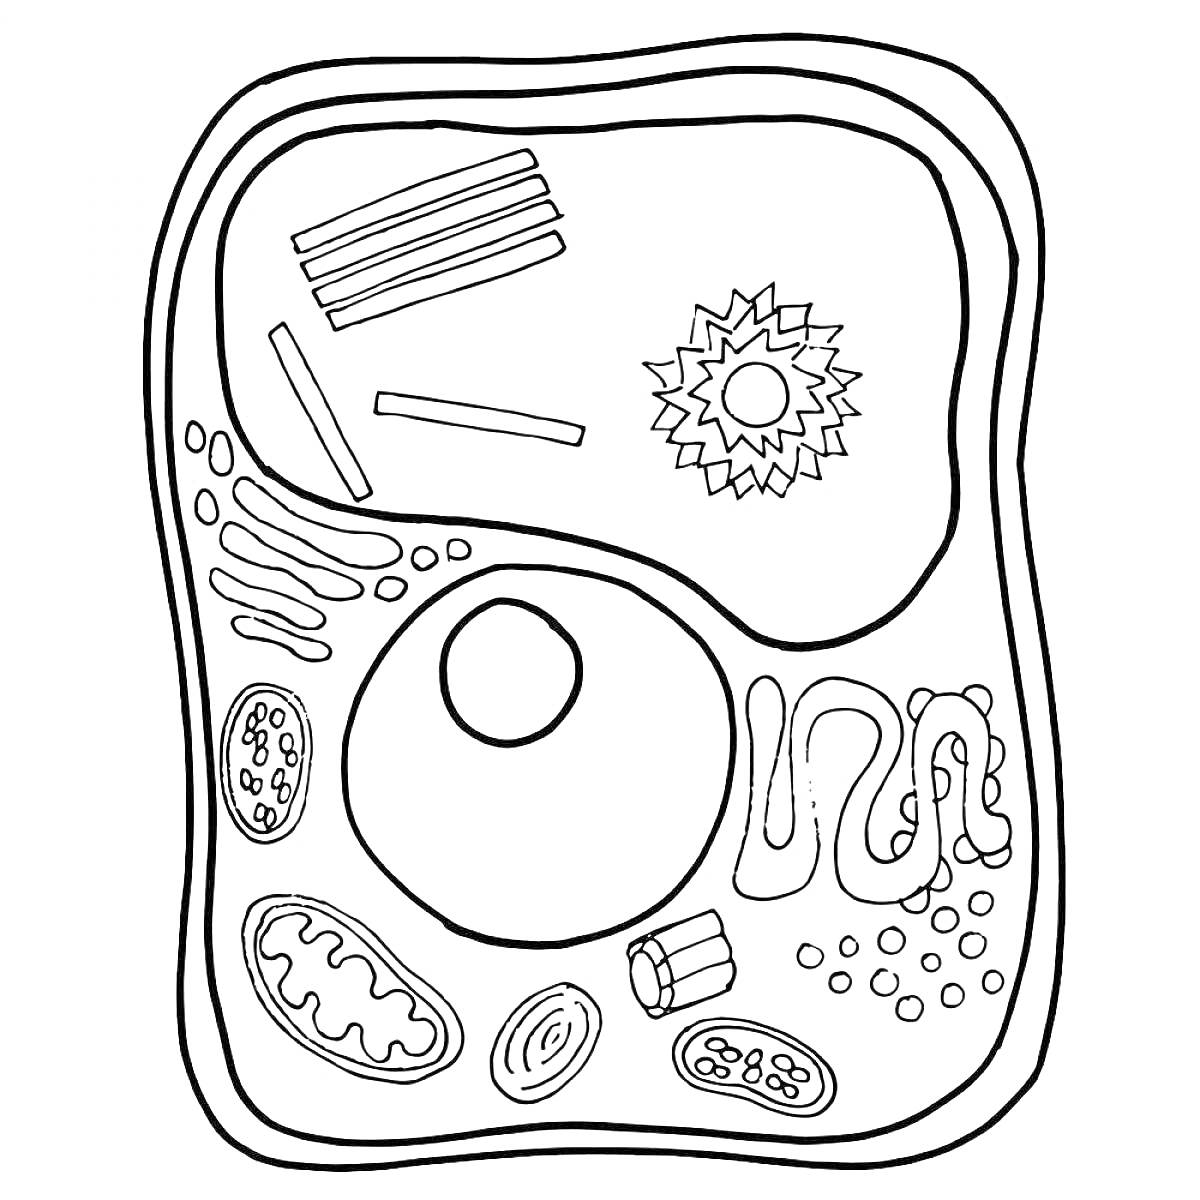 Раскраска Строение клетки с обозначением всех элементов (ядро, митохондрии, рибосомы, эндоплазматическая сеть, аппарат Гольджи, лизосомы, цитоплазма, клеточная мембрана)